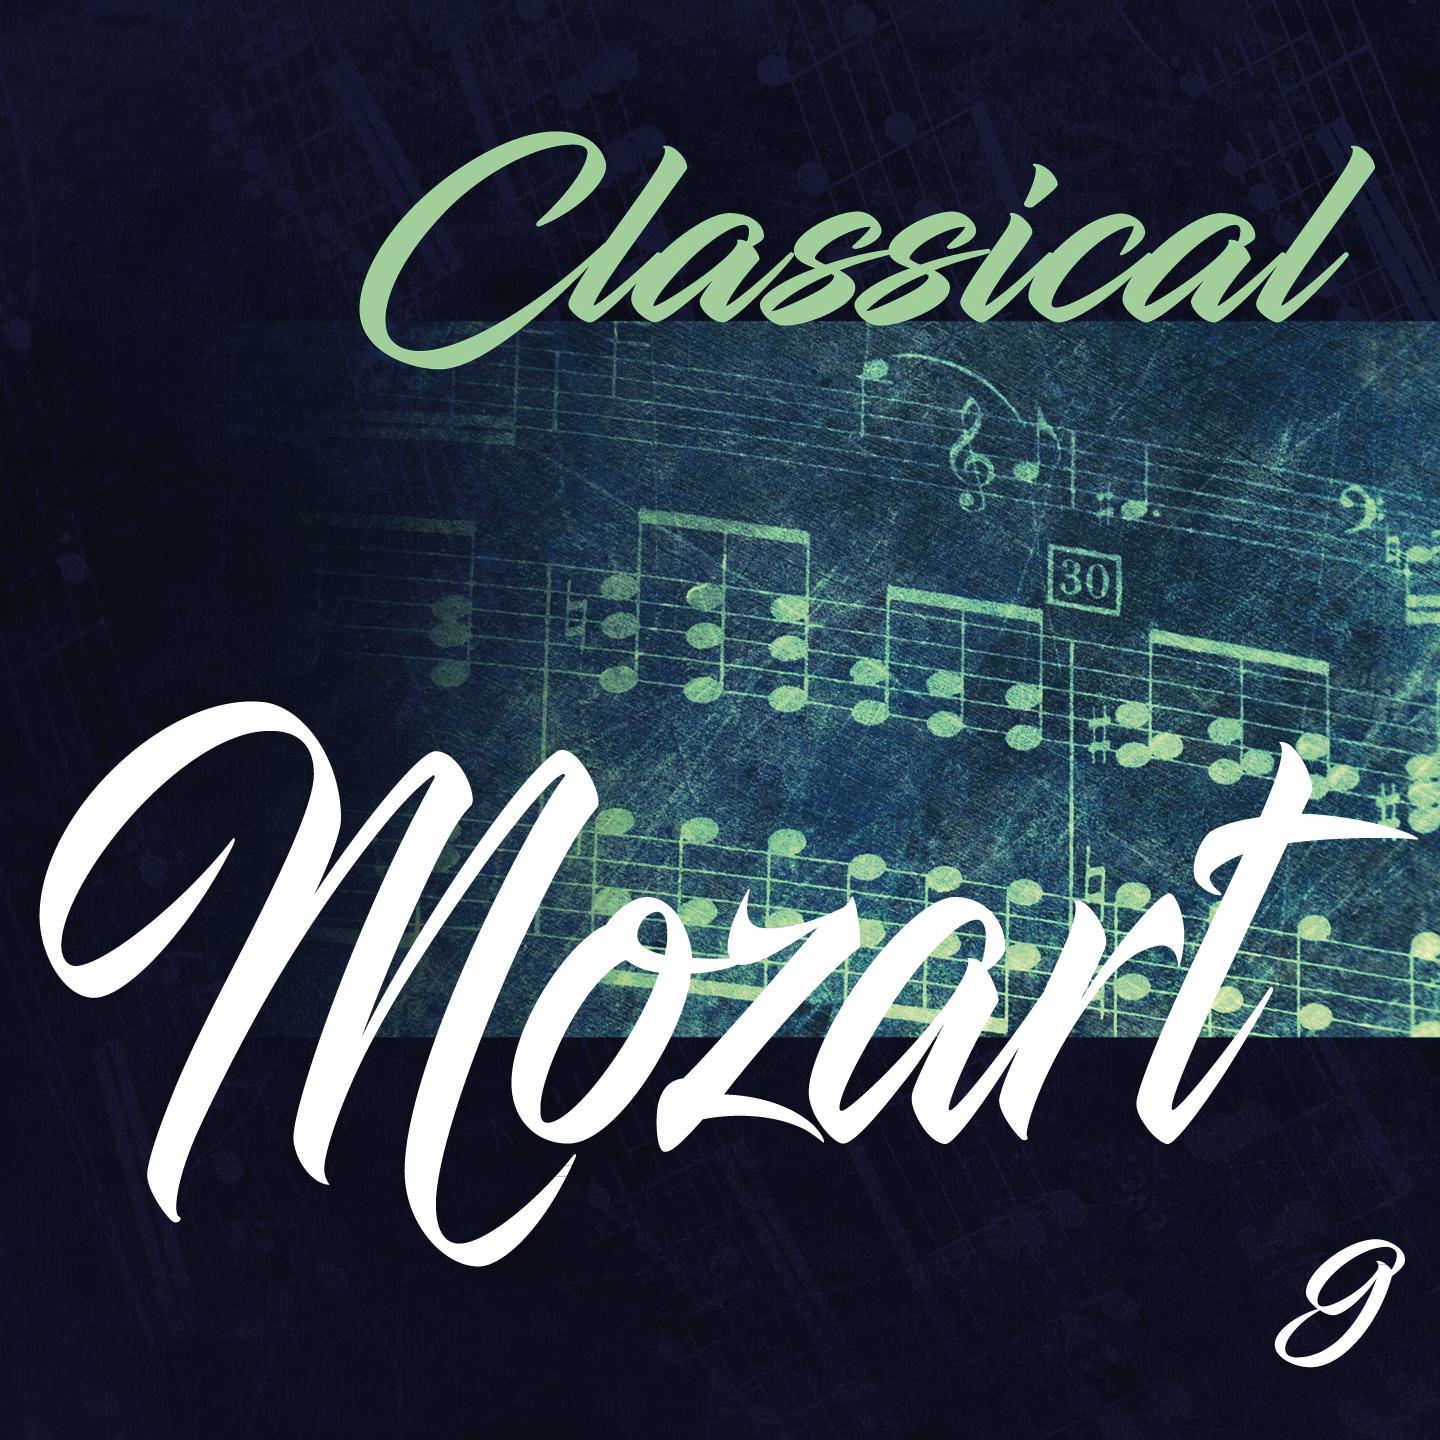 Classical Mozart 9